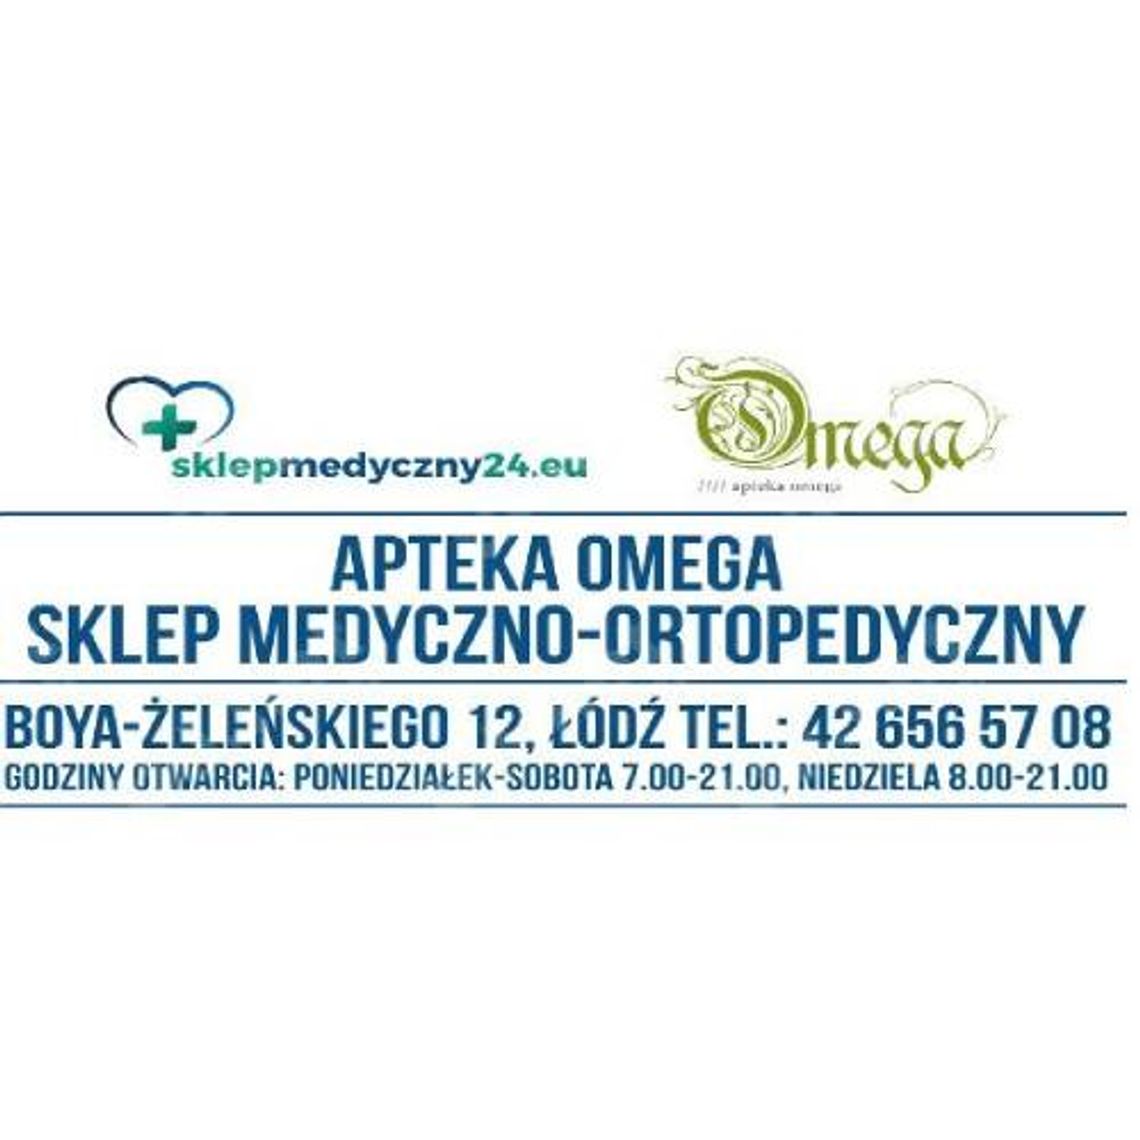 Apteka Omega - sklep rehabilitacyjny i ortopedyczny Łódź